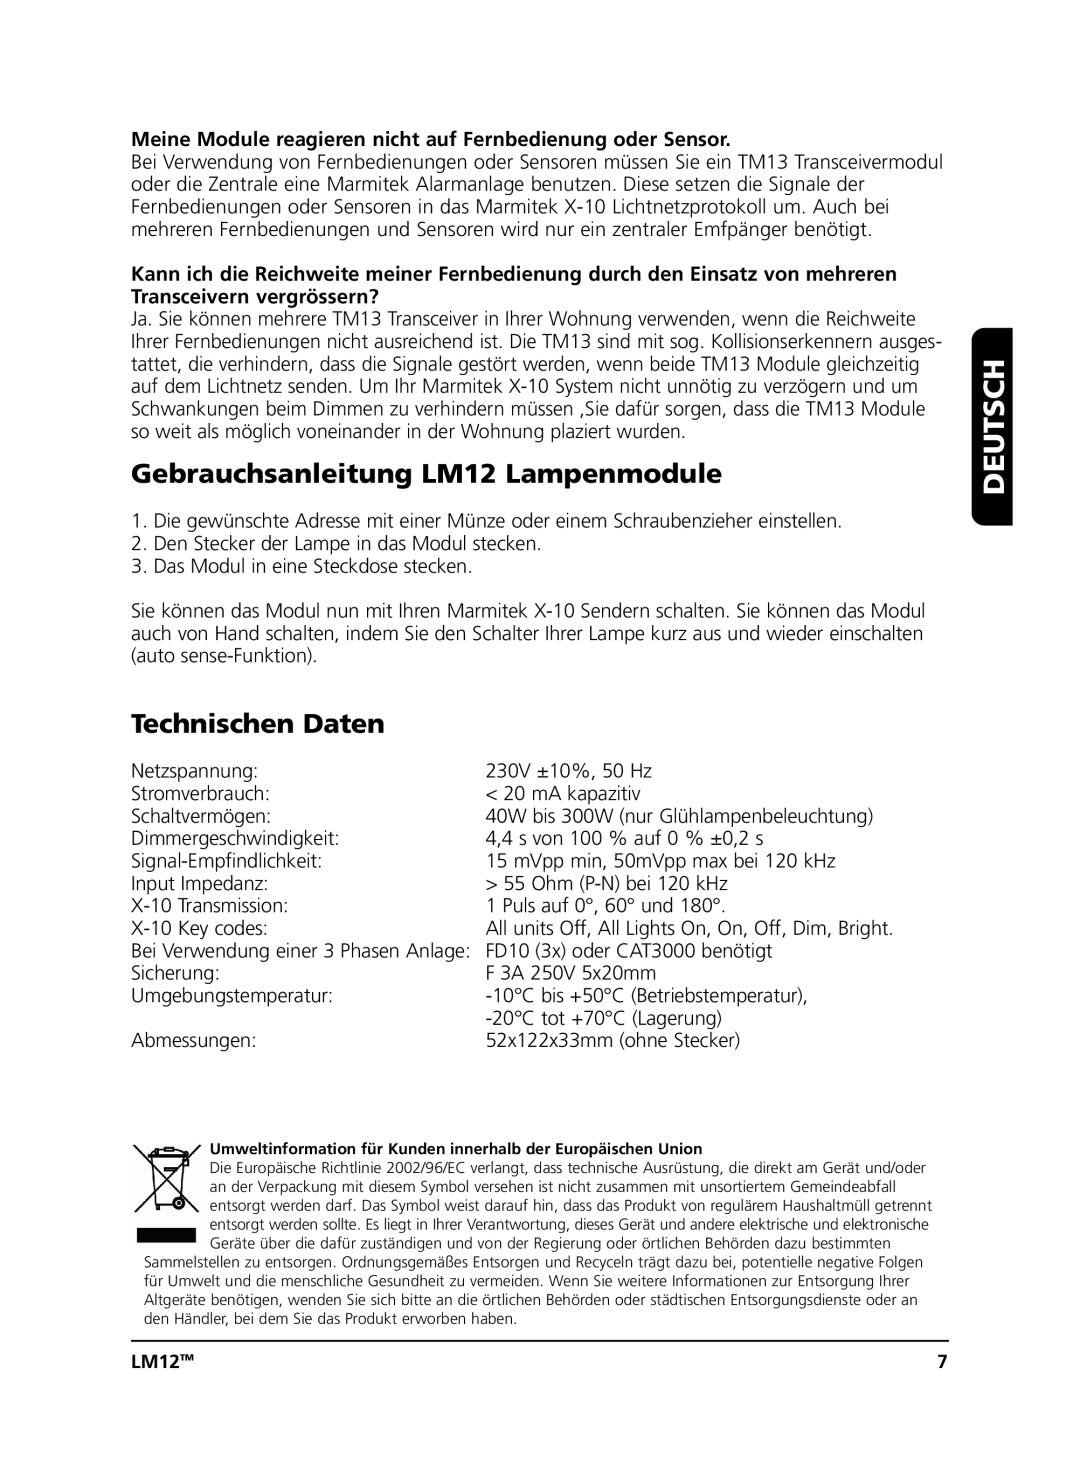 Marmitek user manual Gebrauchsanleitung LM12 Lampenmodule, Technischen Daten, Deutsch 